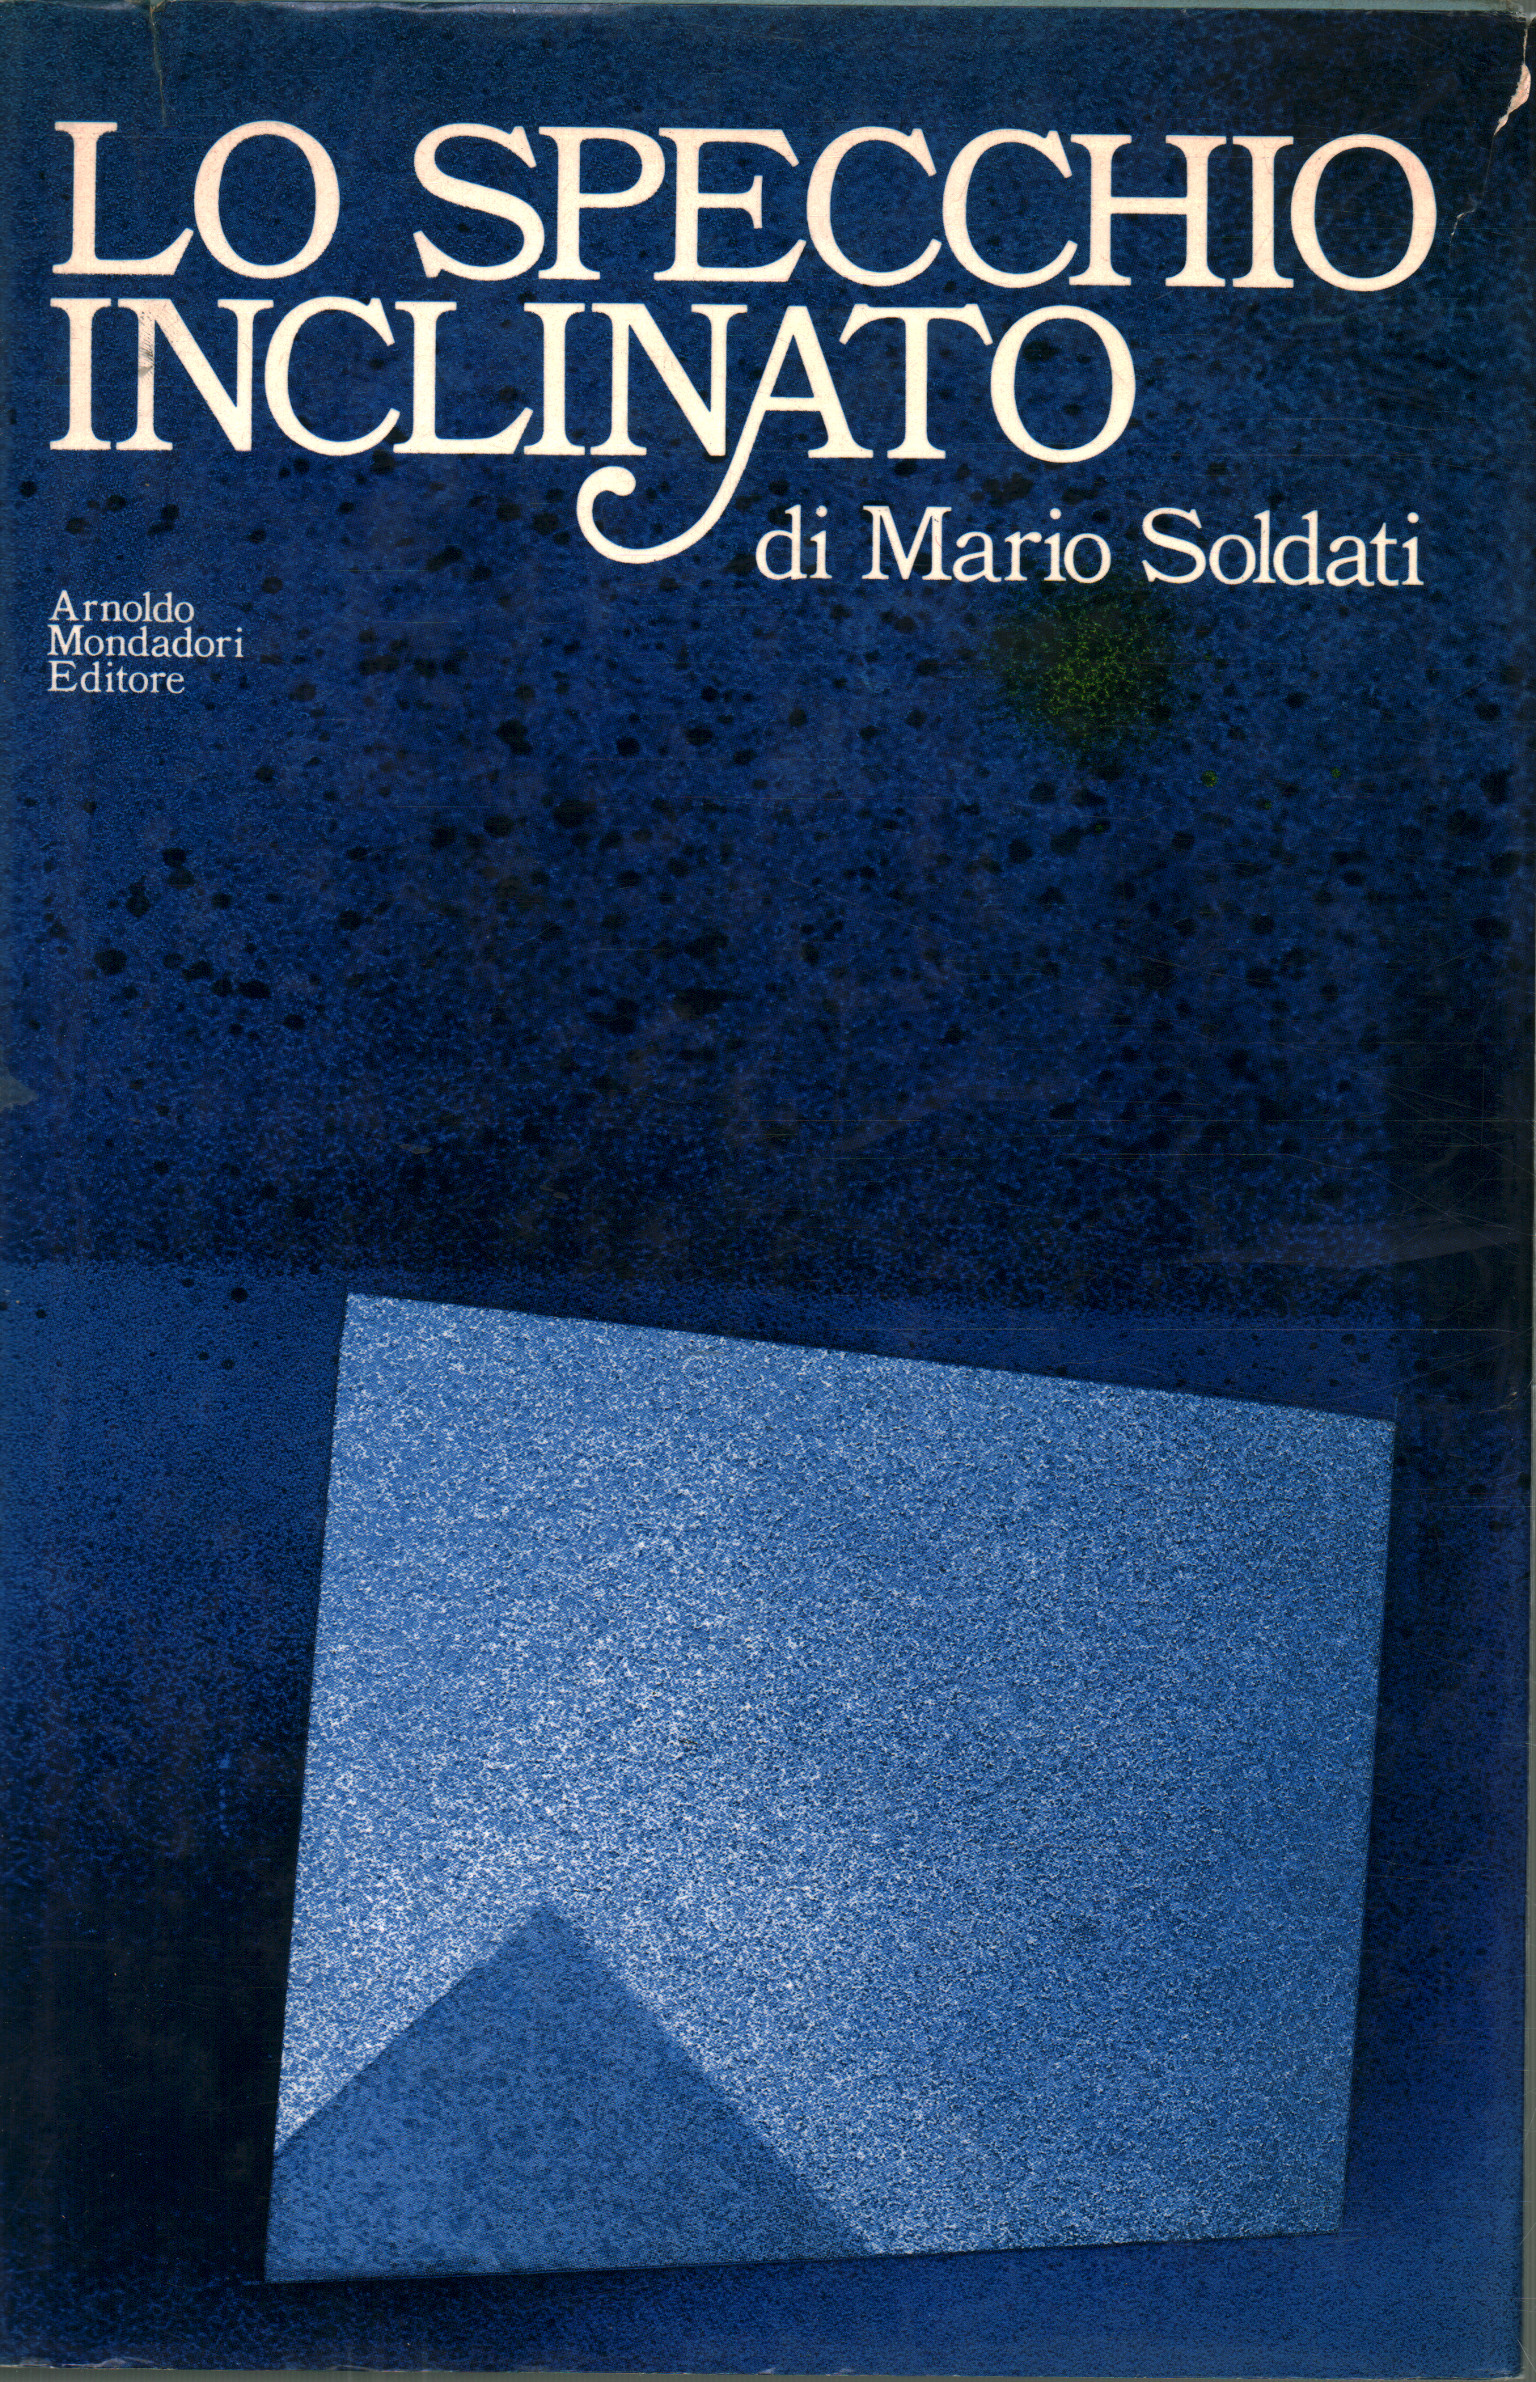 El espejo inclinado, Mario Soldati